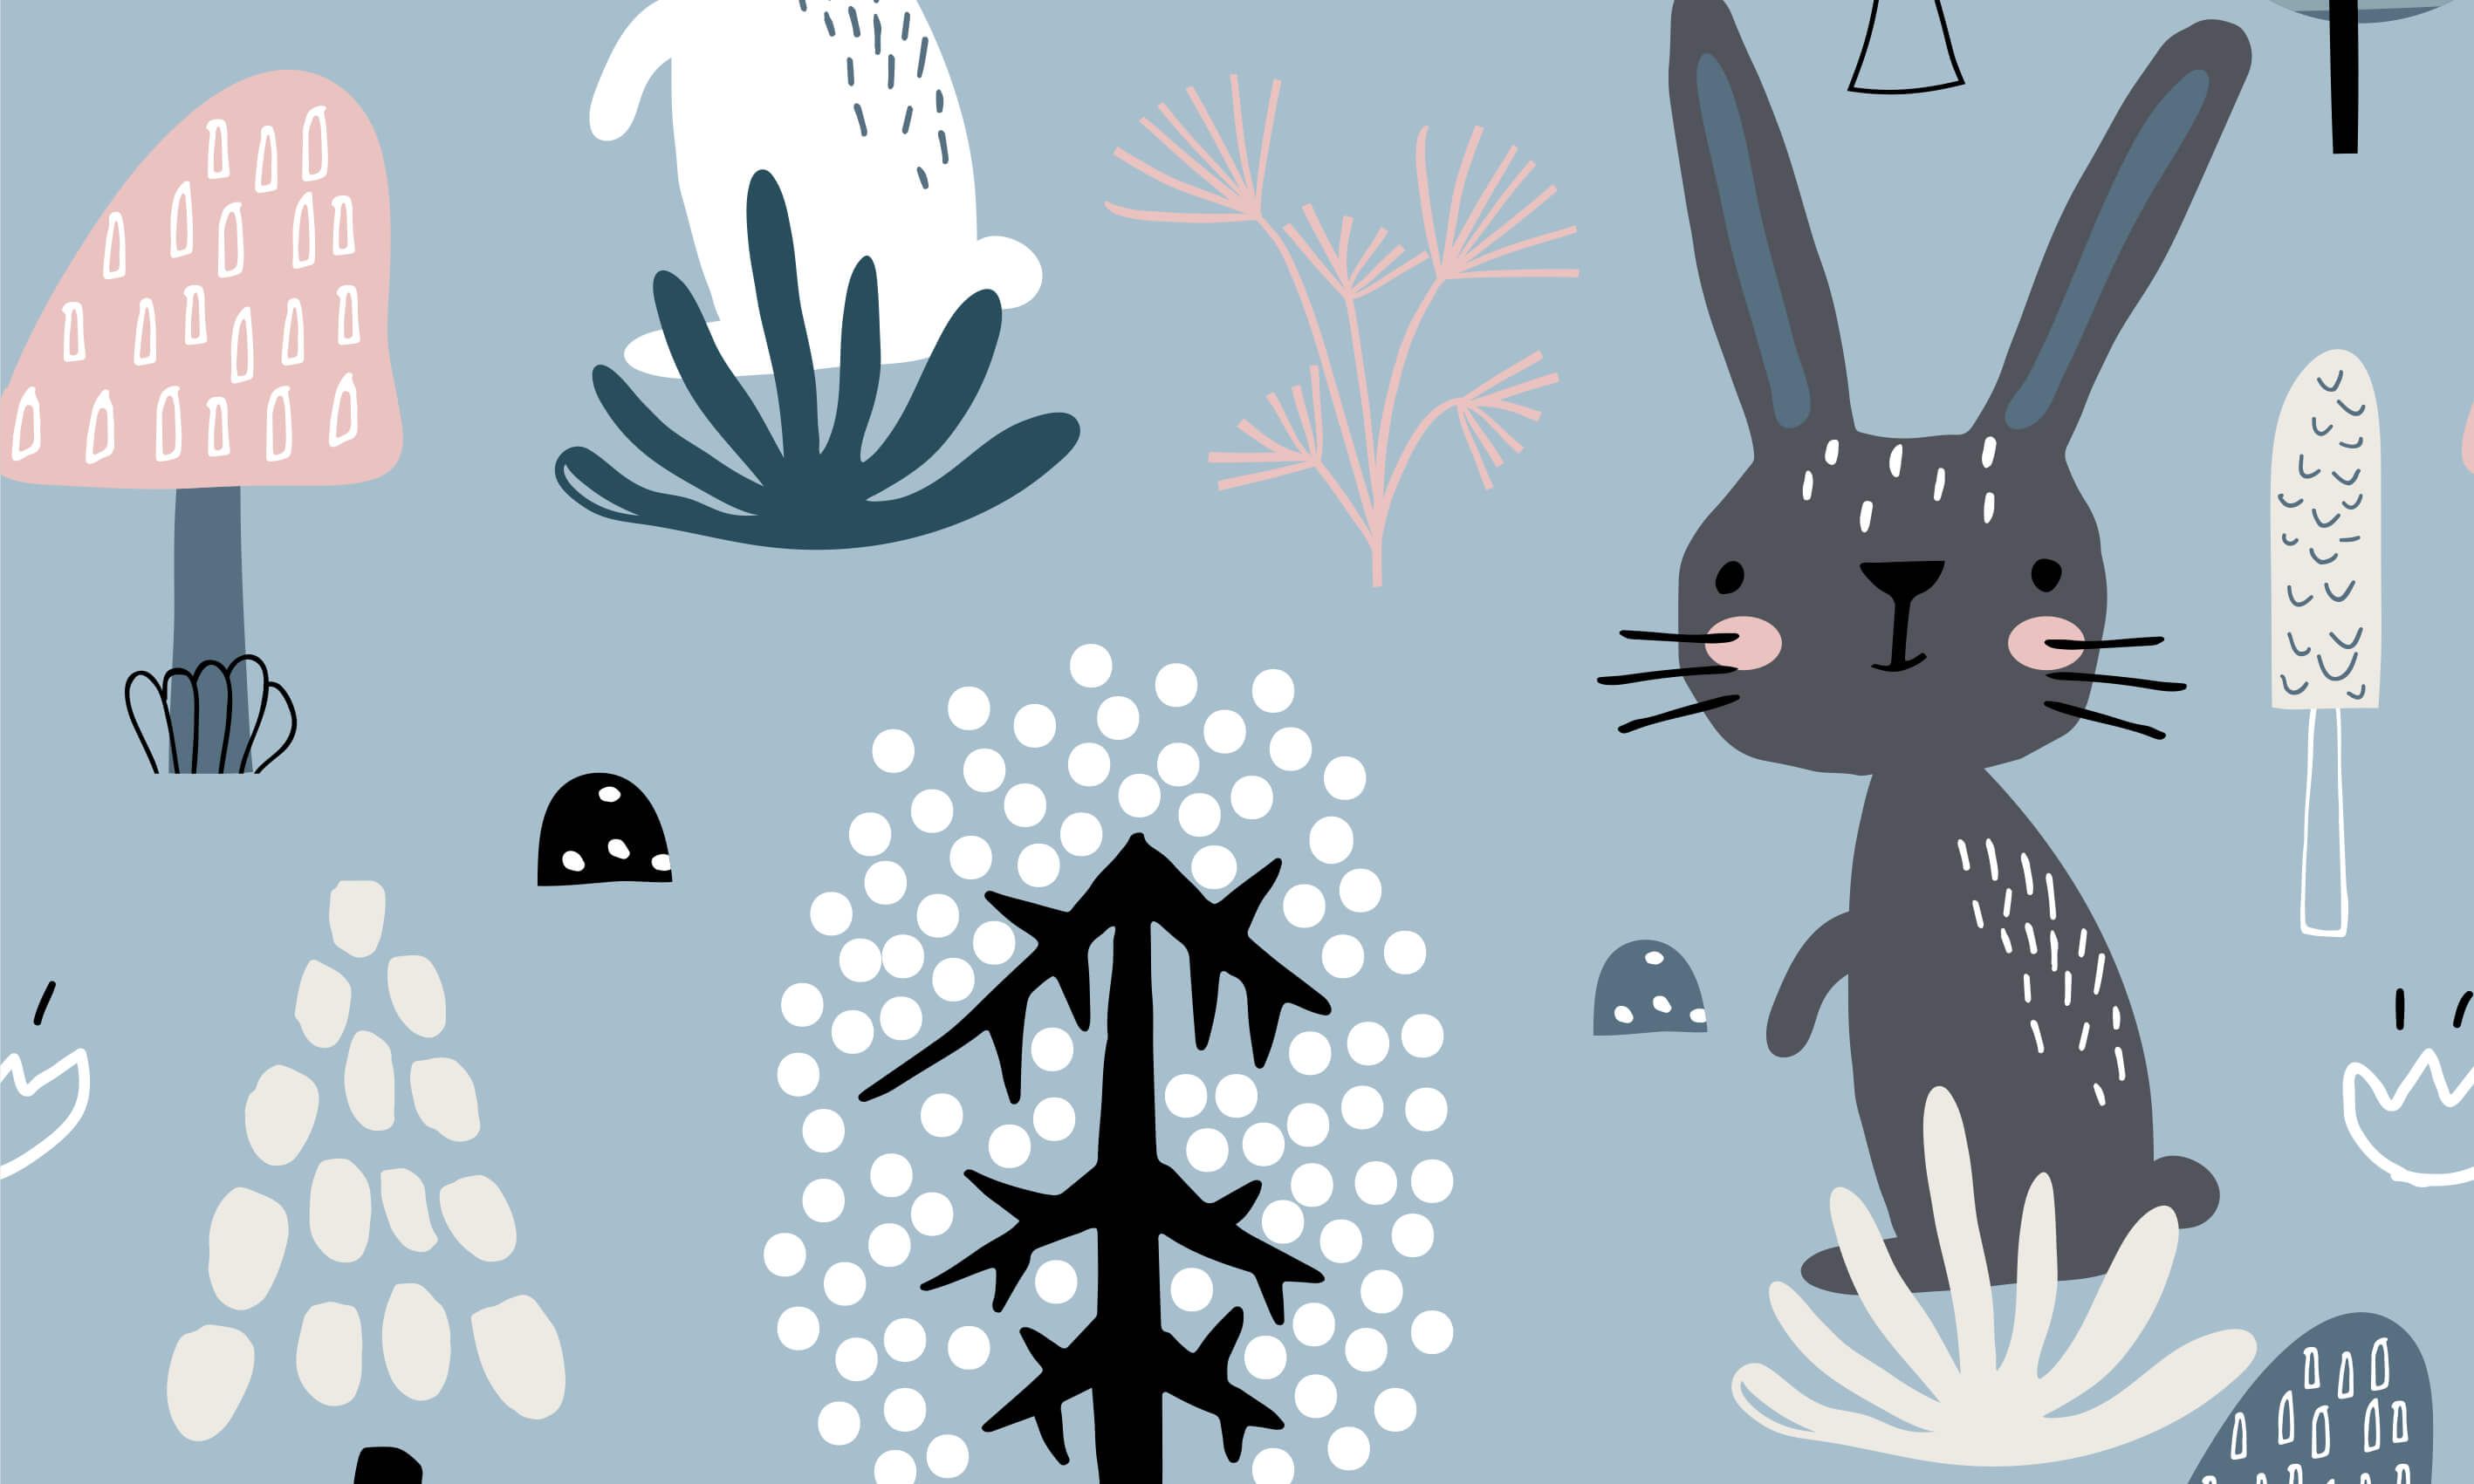 Animales Papel pintado con Patrón de conejo azul - Habitación de los niños